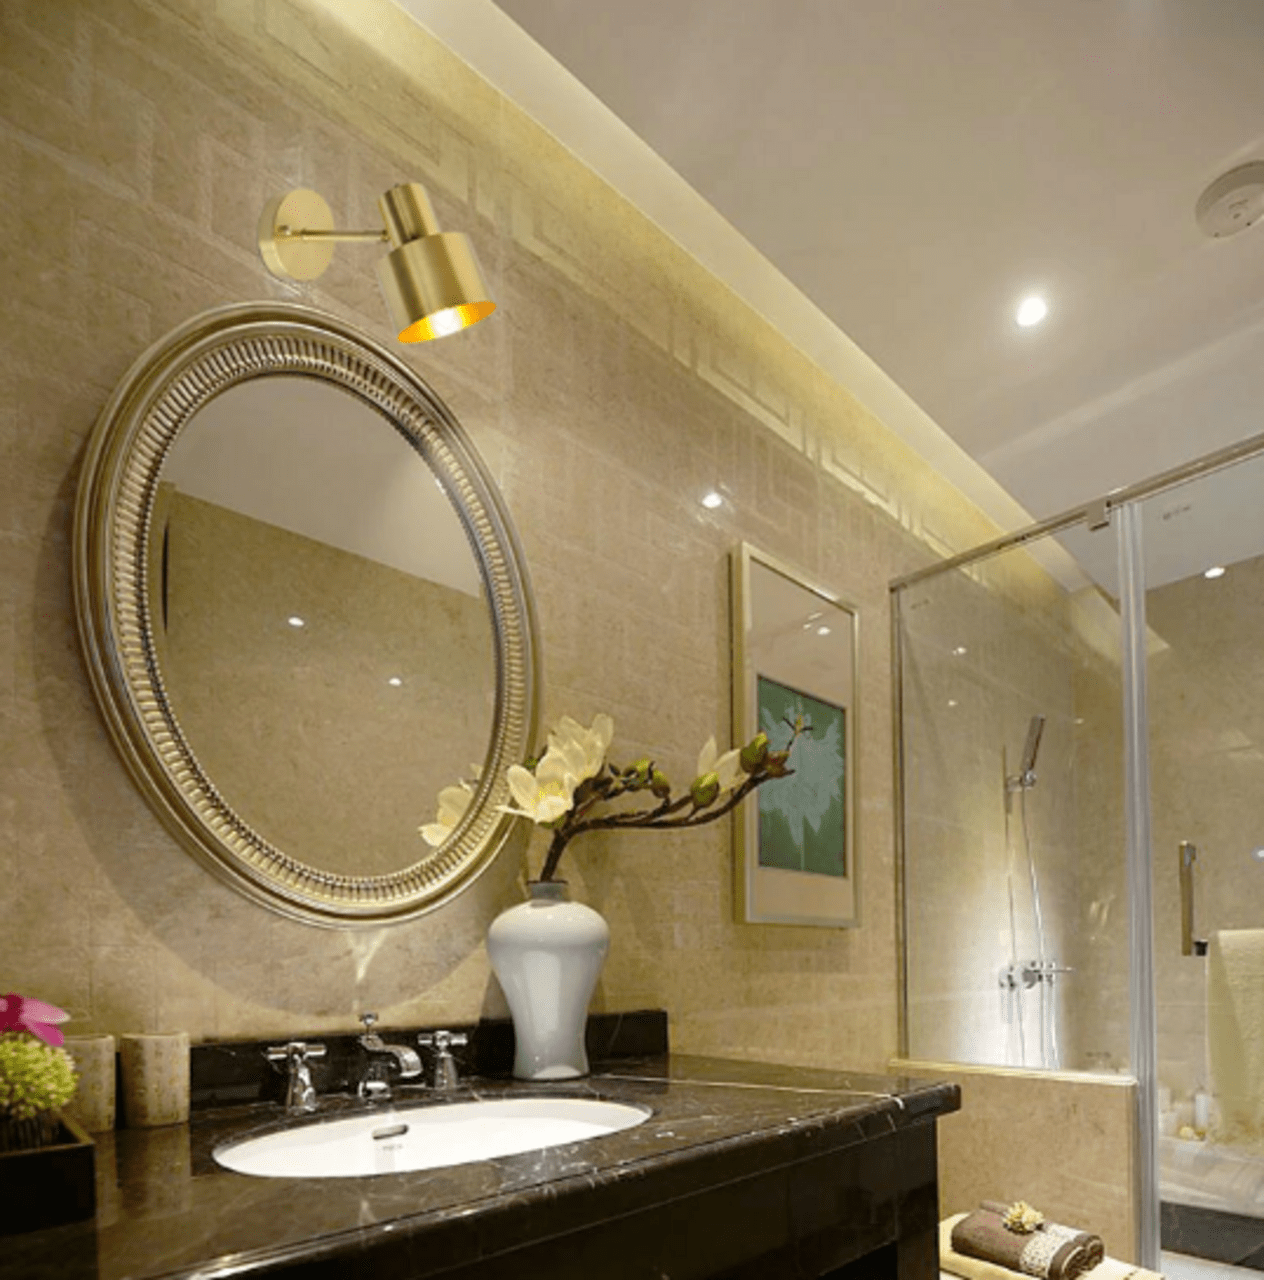 Виды подсветки для зеркала в ванной, варианты установки и подключения 47 - ДиванеТТо